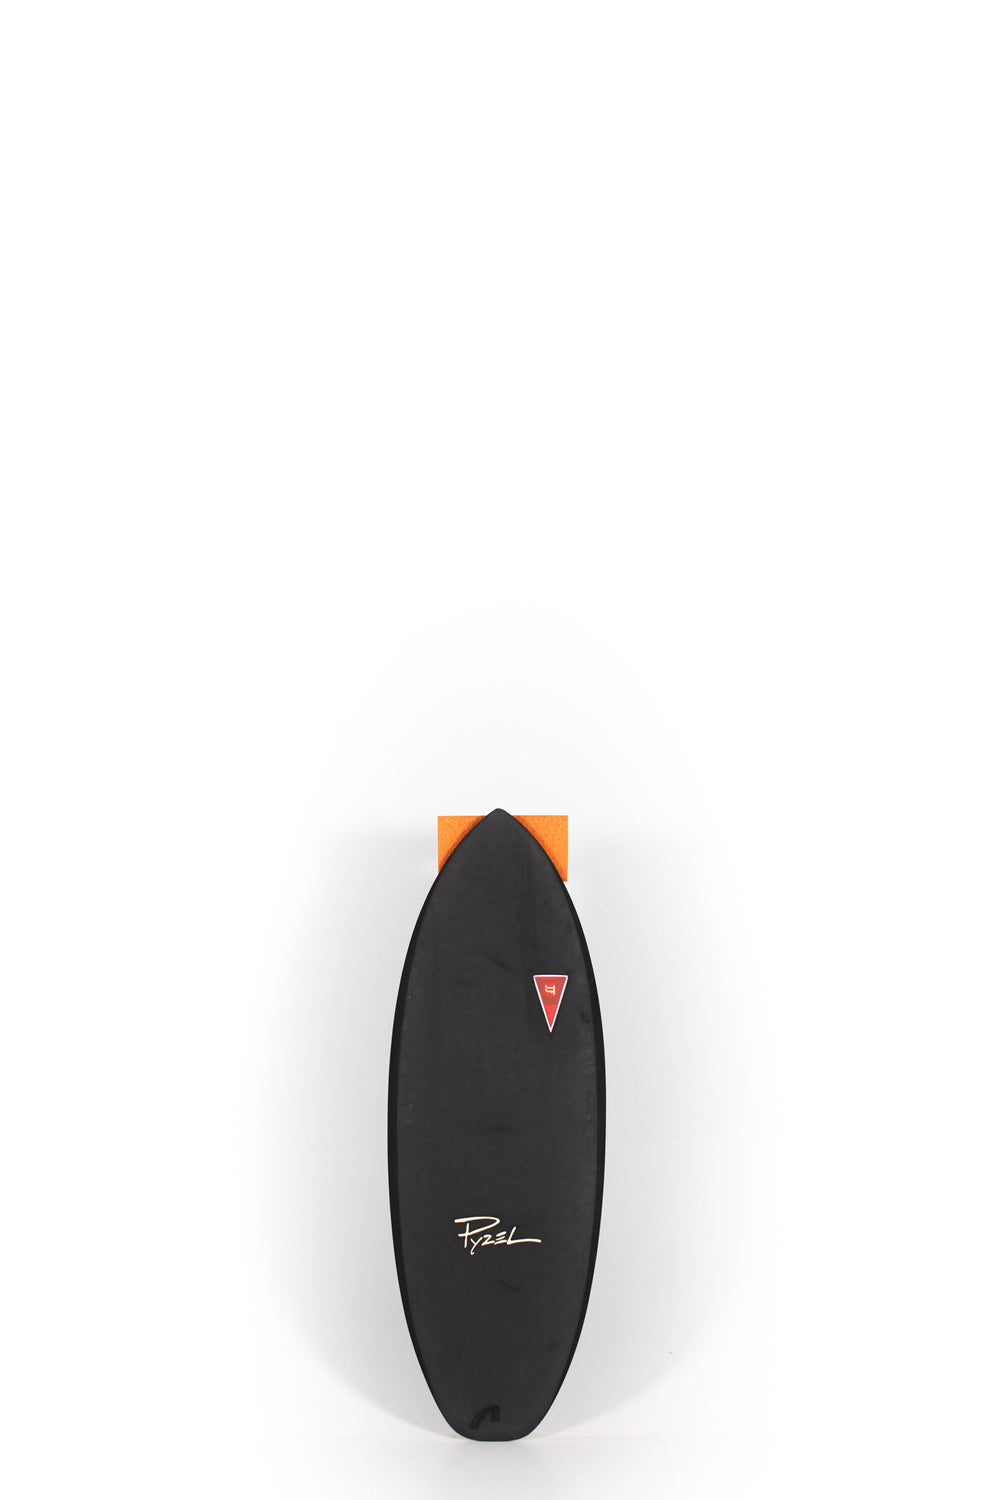 Pukas Surf Shop - JJF SURFBOARD - GREMLIN 4.6 BLACK